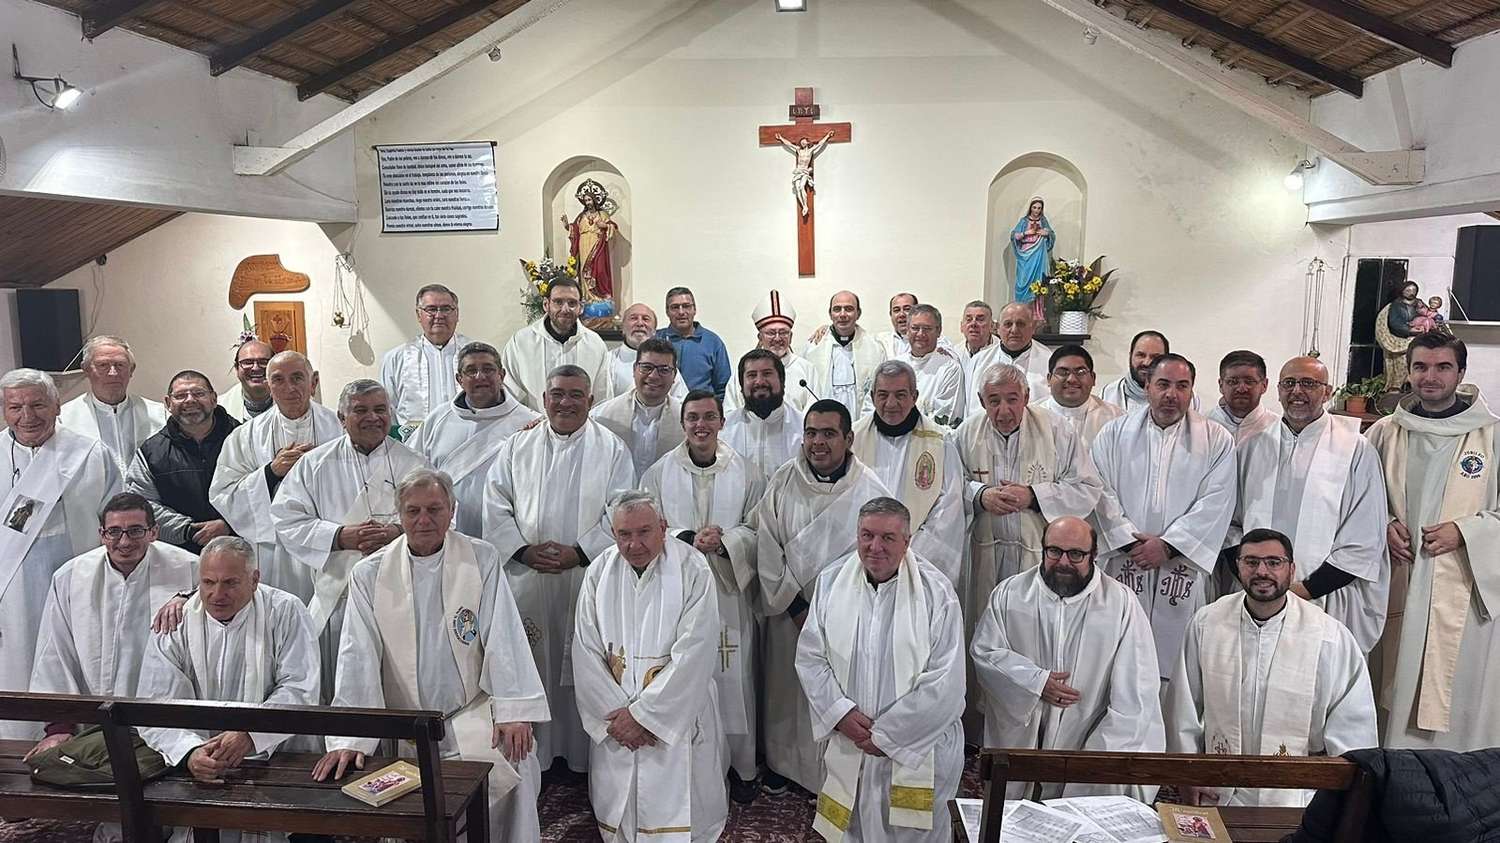 Más de 30 sacerdotes de la Diócesis misionaron por diferentes barrios de Gualeguaychú